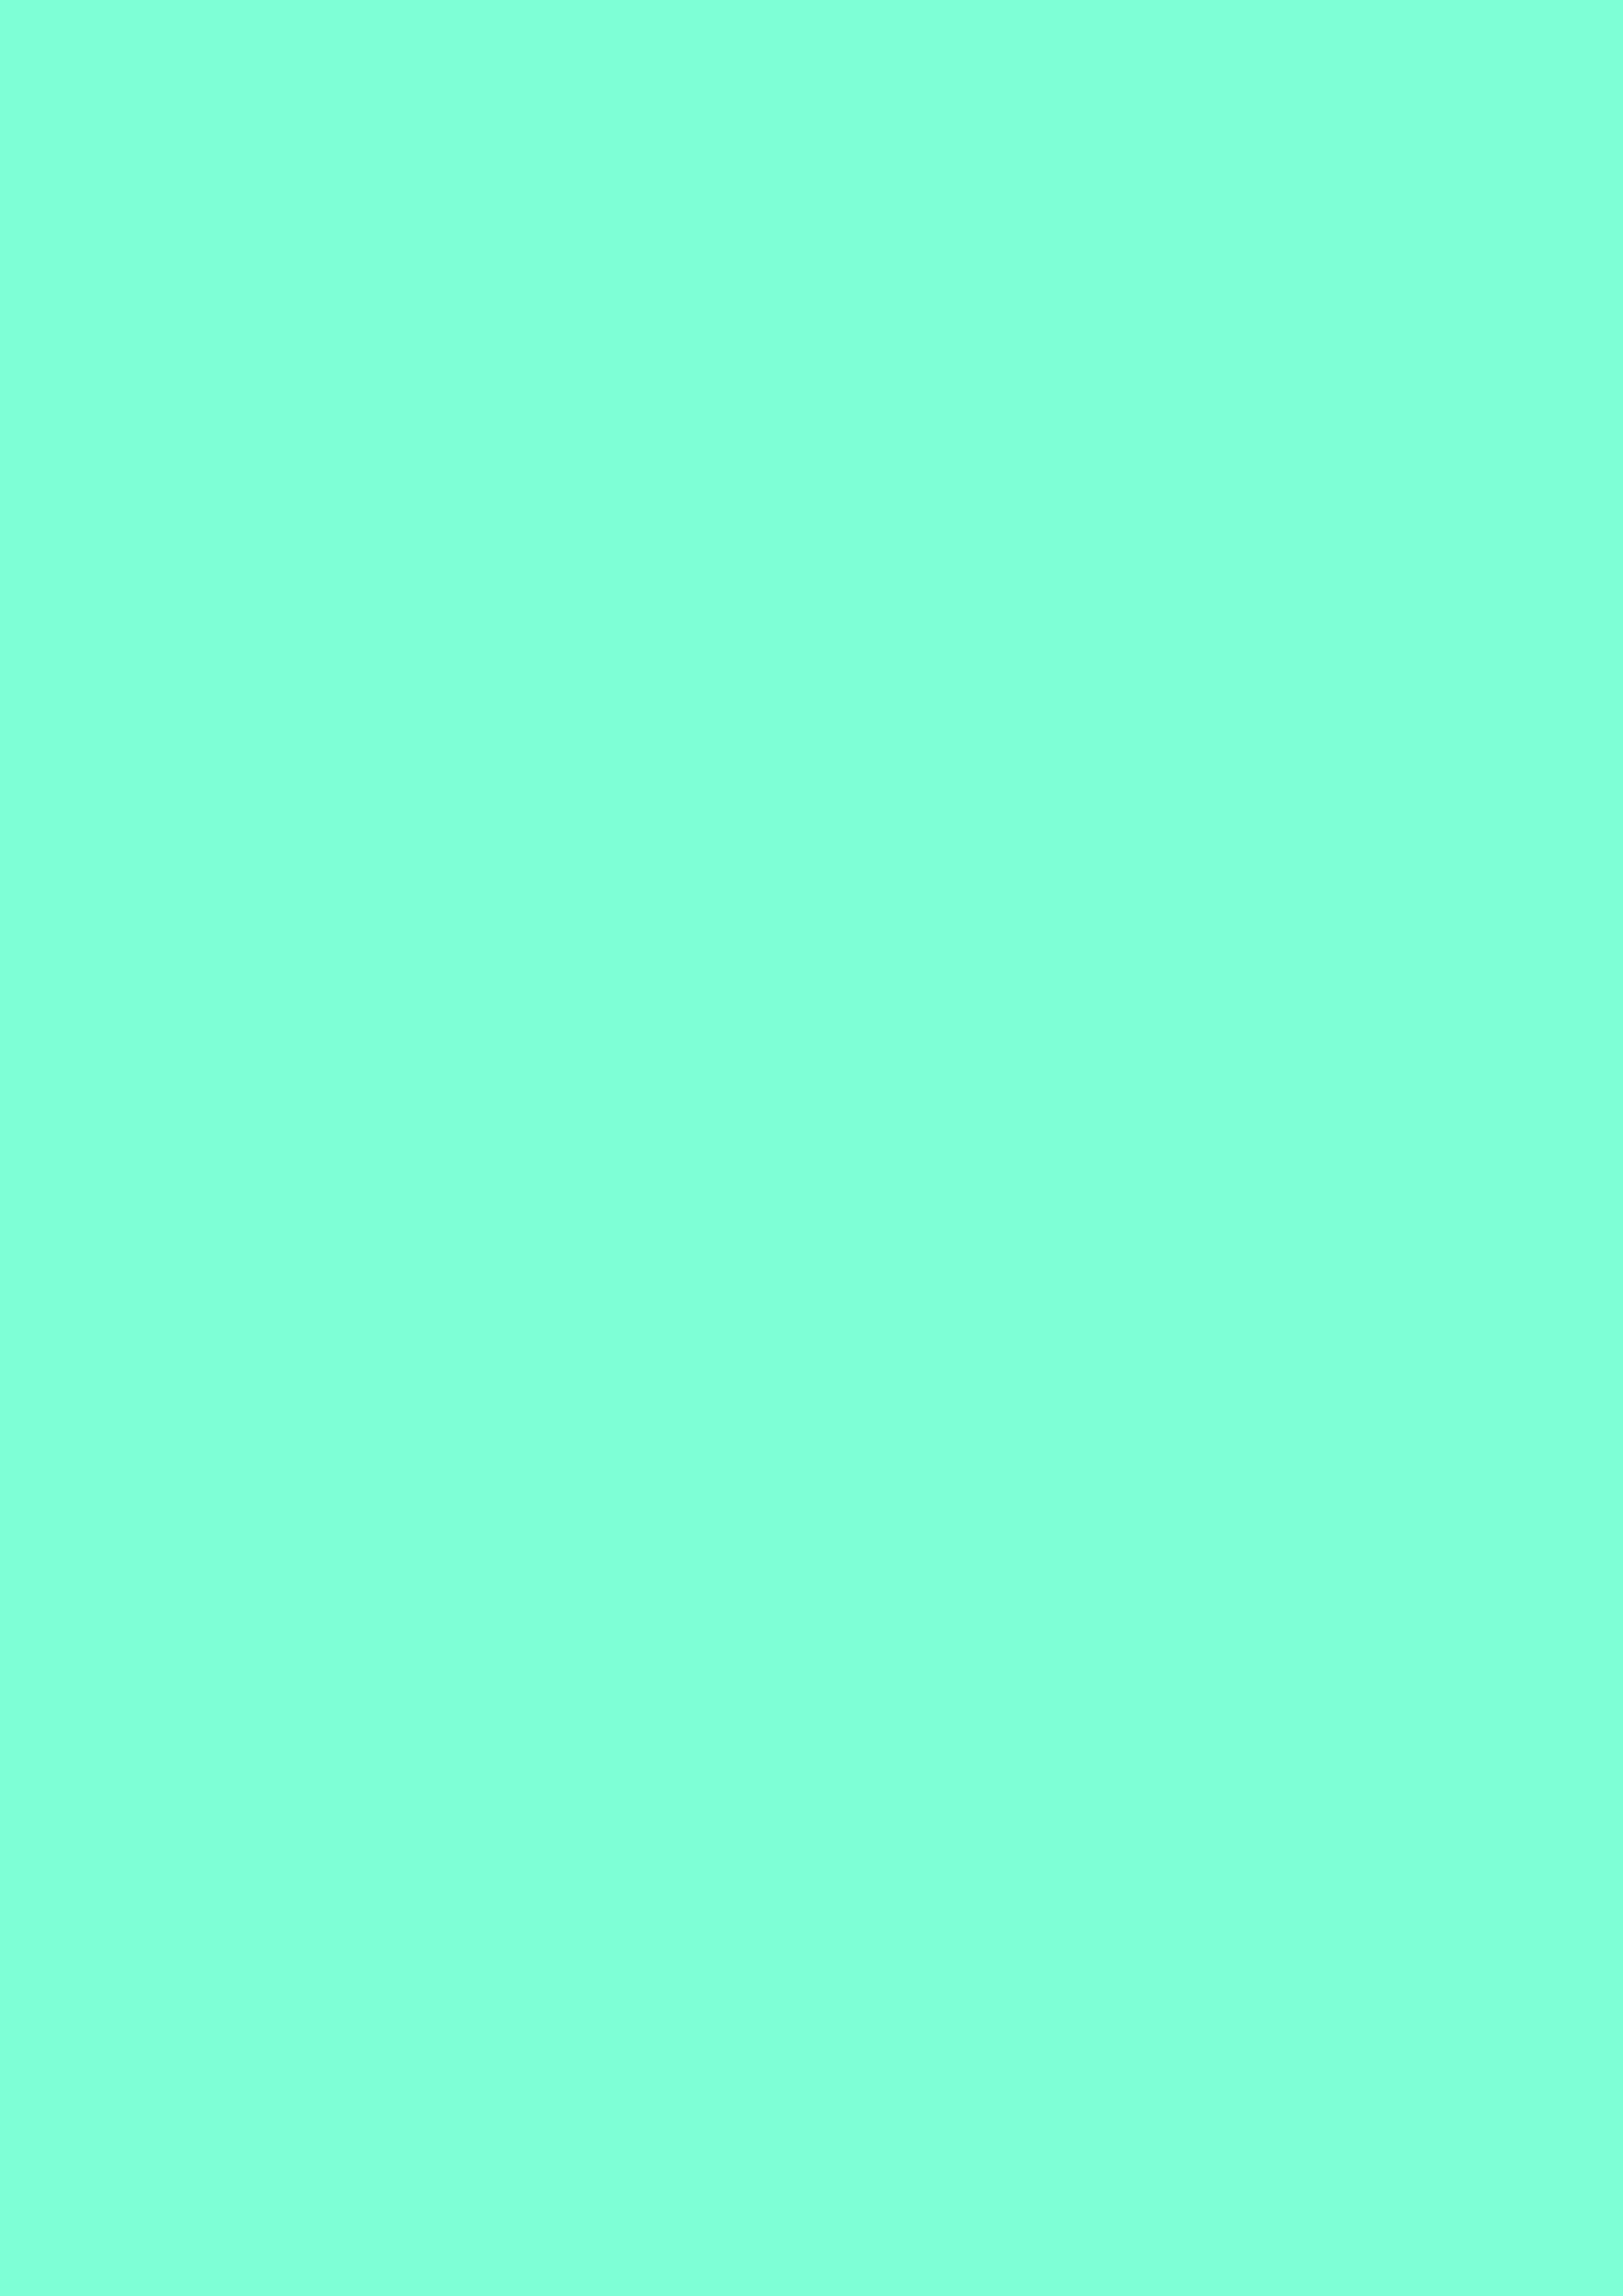 2480x3508 Aquamarine Solid Color Background